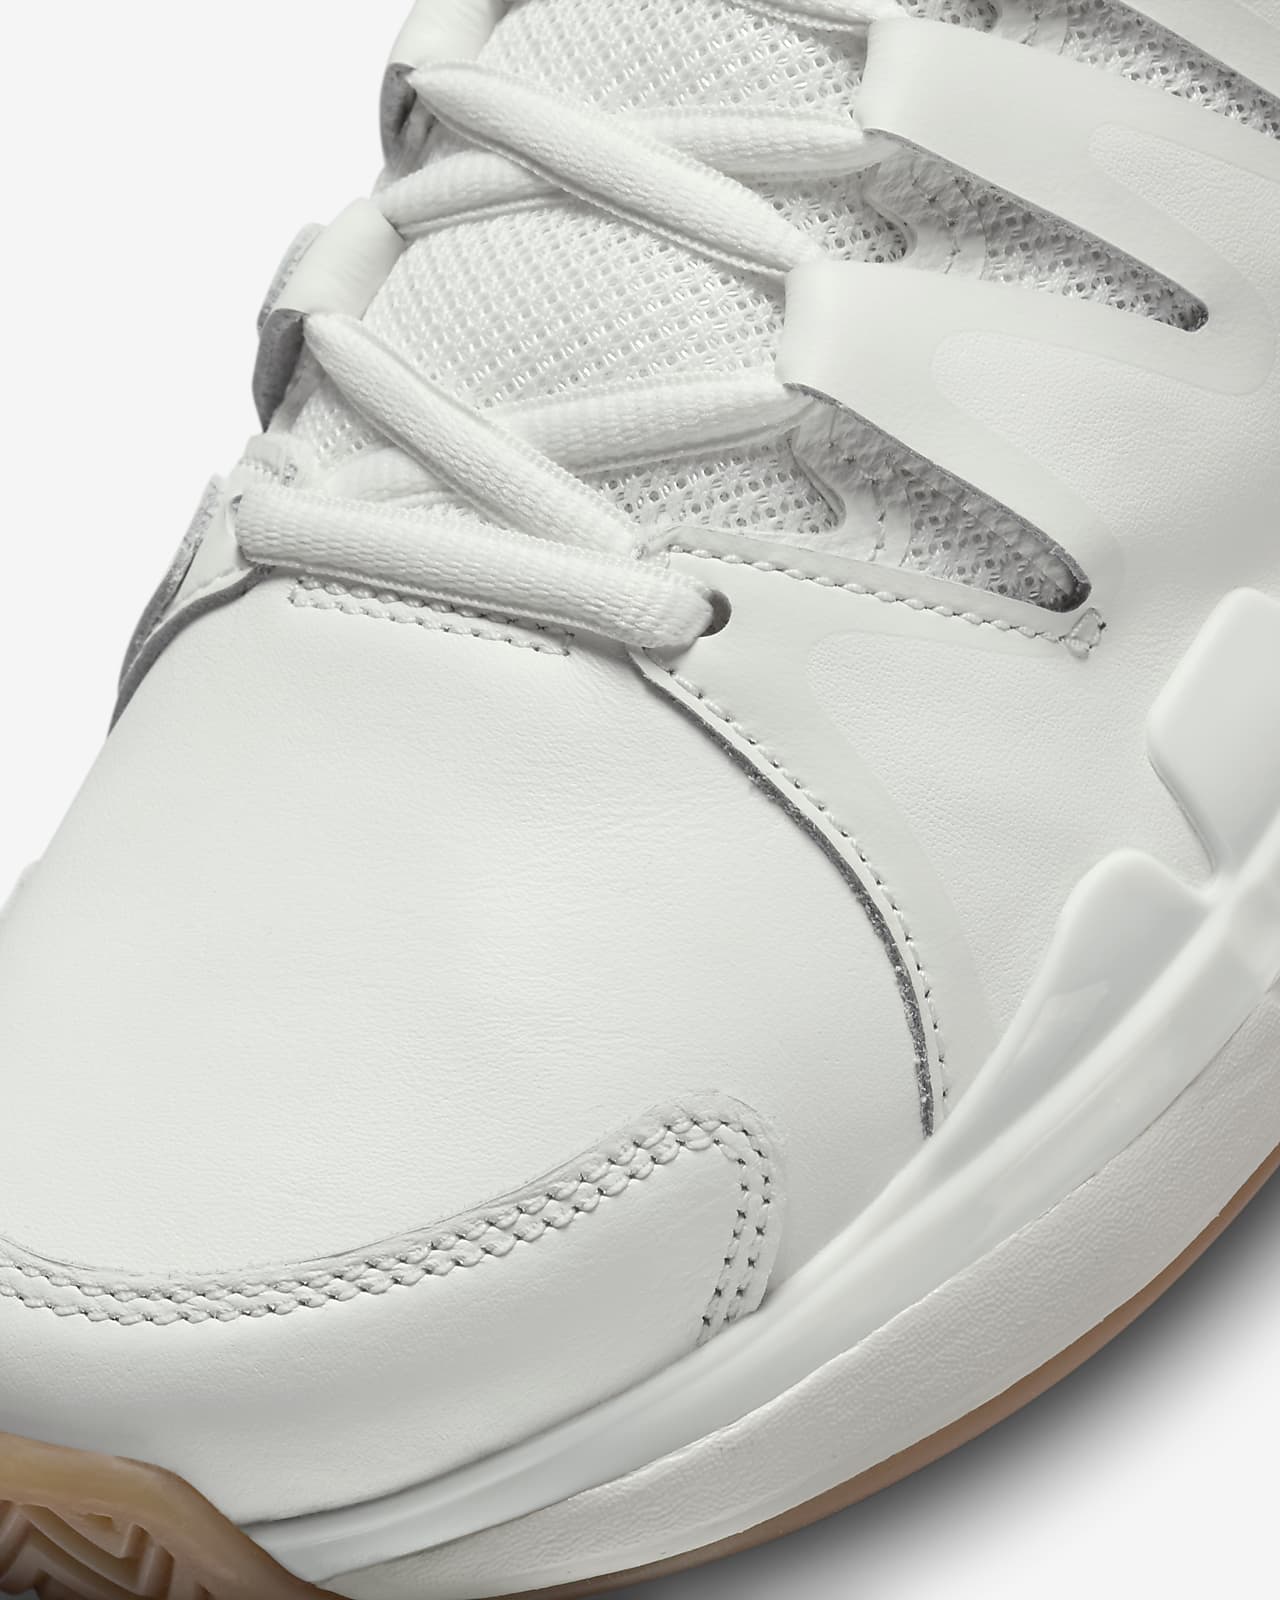 NikeCourt Air Zoom Vapor 9.5 Tour Leather Men's Tennis Shoes